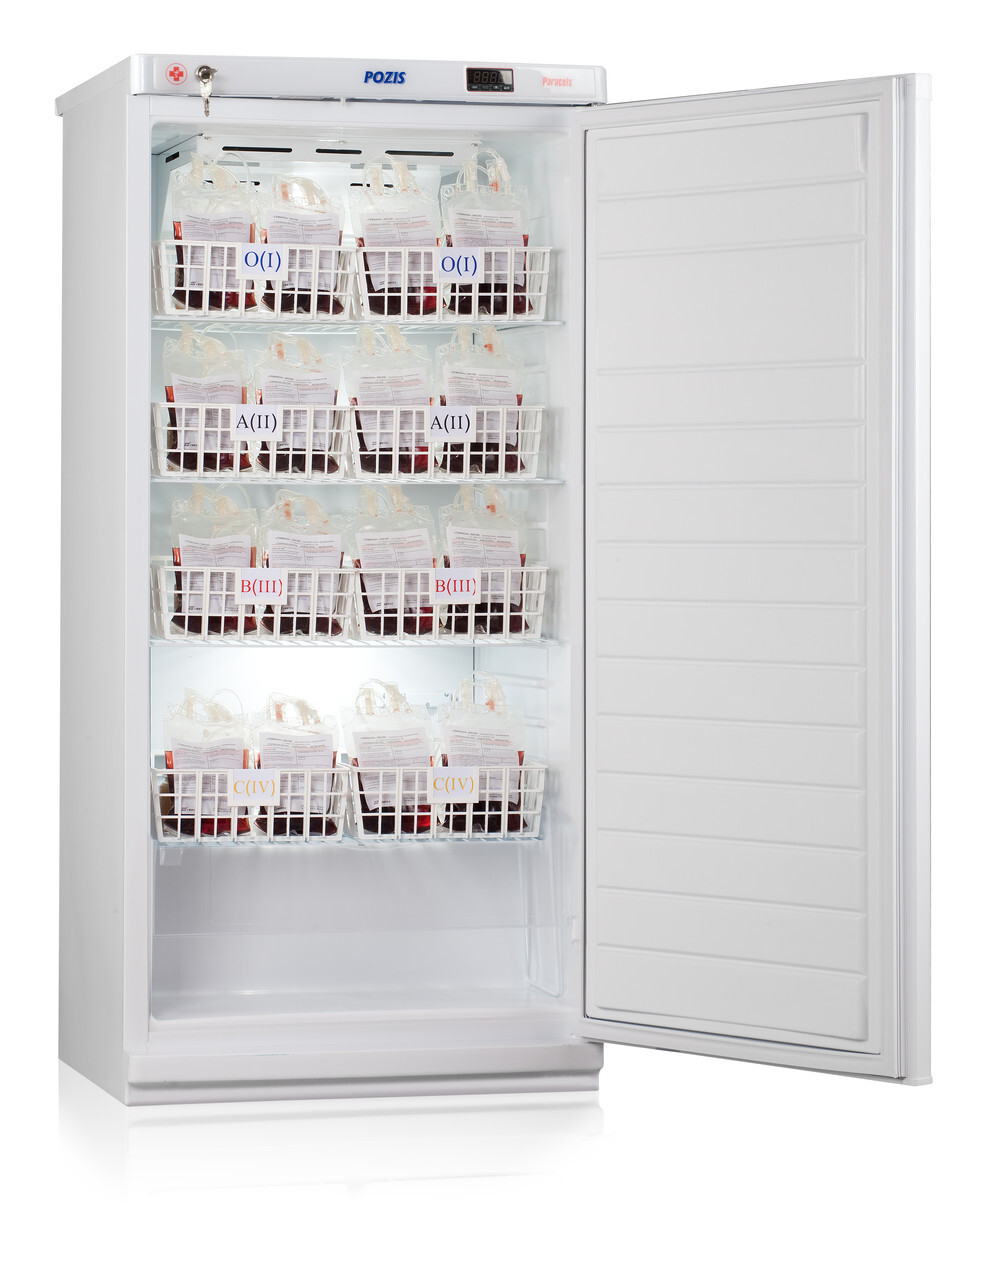 Pozis 256. Холодильник для хранения крови хк-250-1 Позис. Фармацевтический холодильник хф-250-1 "Позис". Холодильник Позис хк-250-01. Холодильник Позис ХЛ 250.